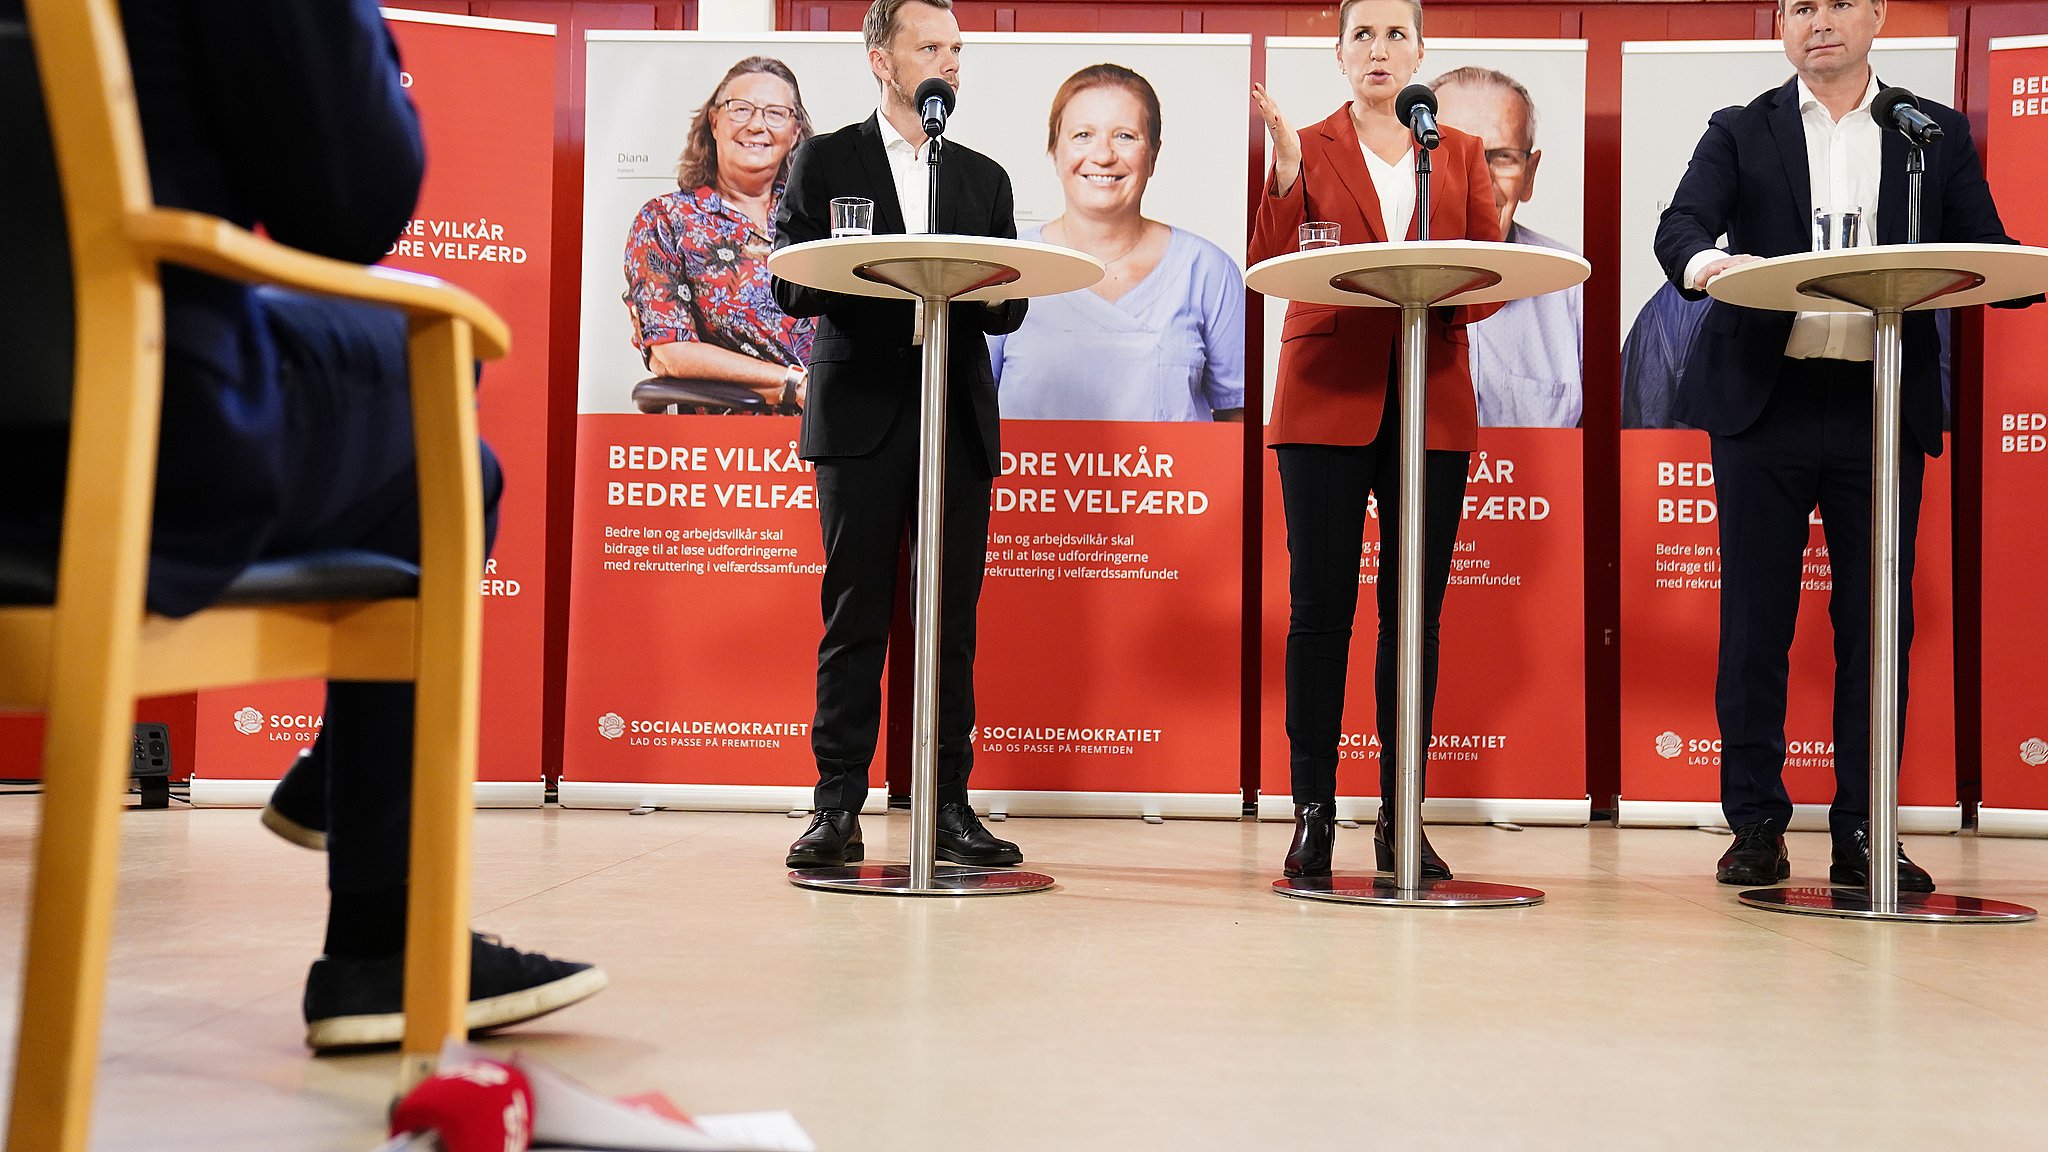 tjekker valget: Socialdemokratiets lønudspil er kant med den danske model ØST